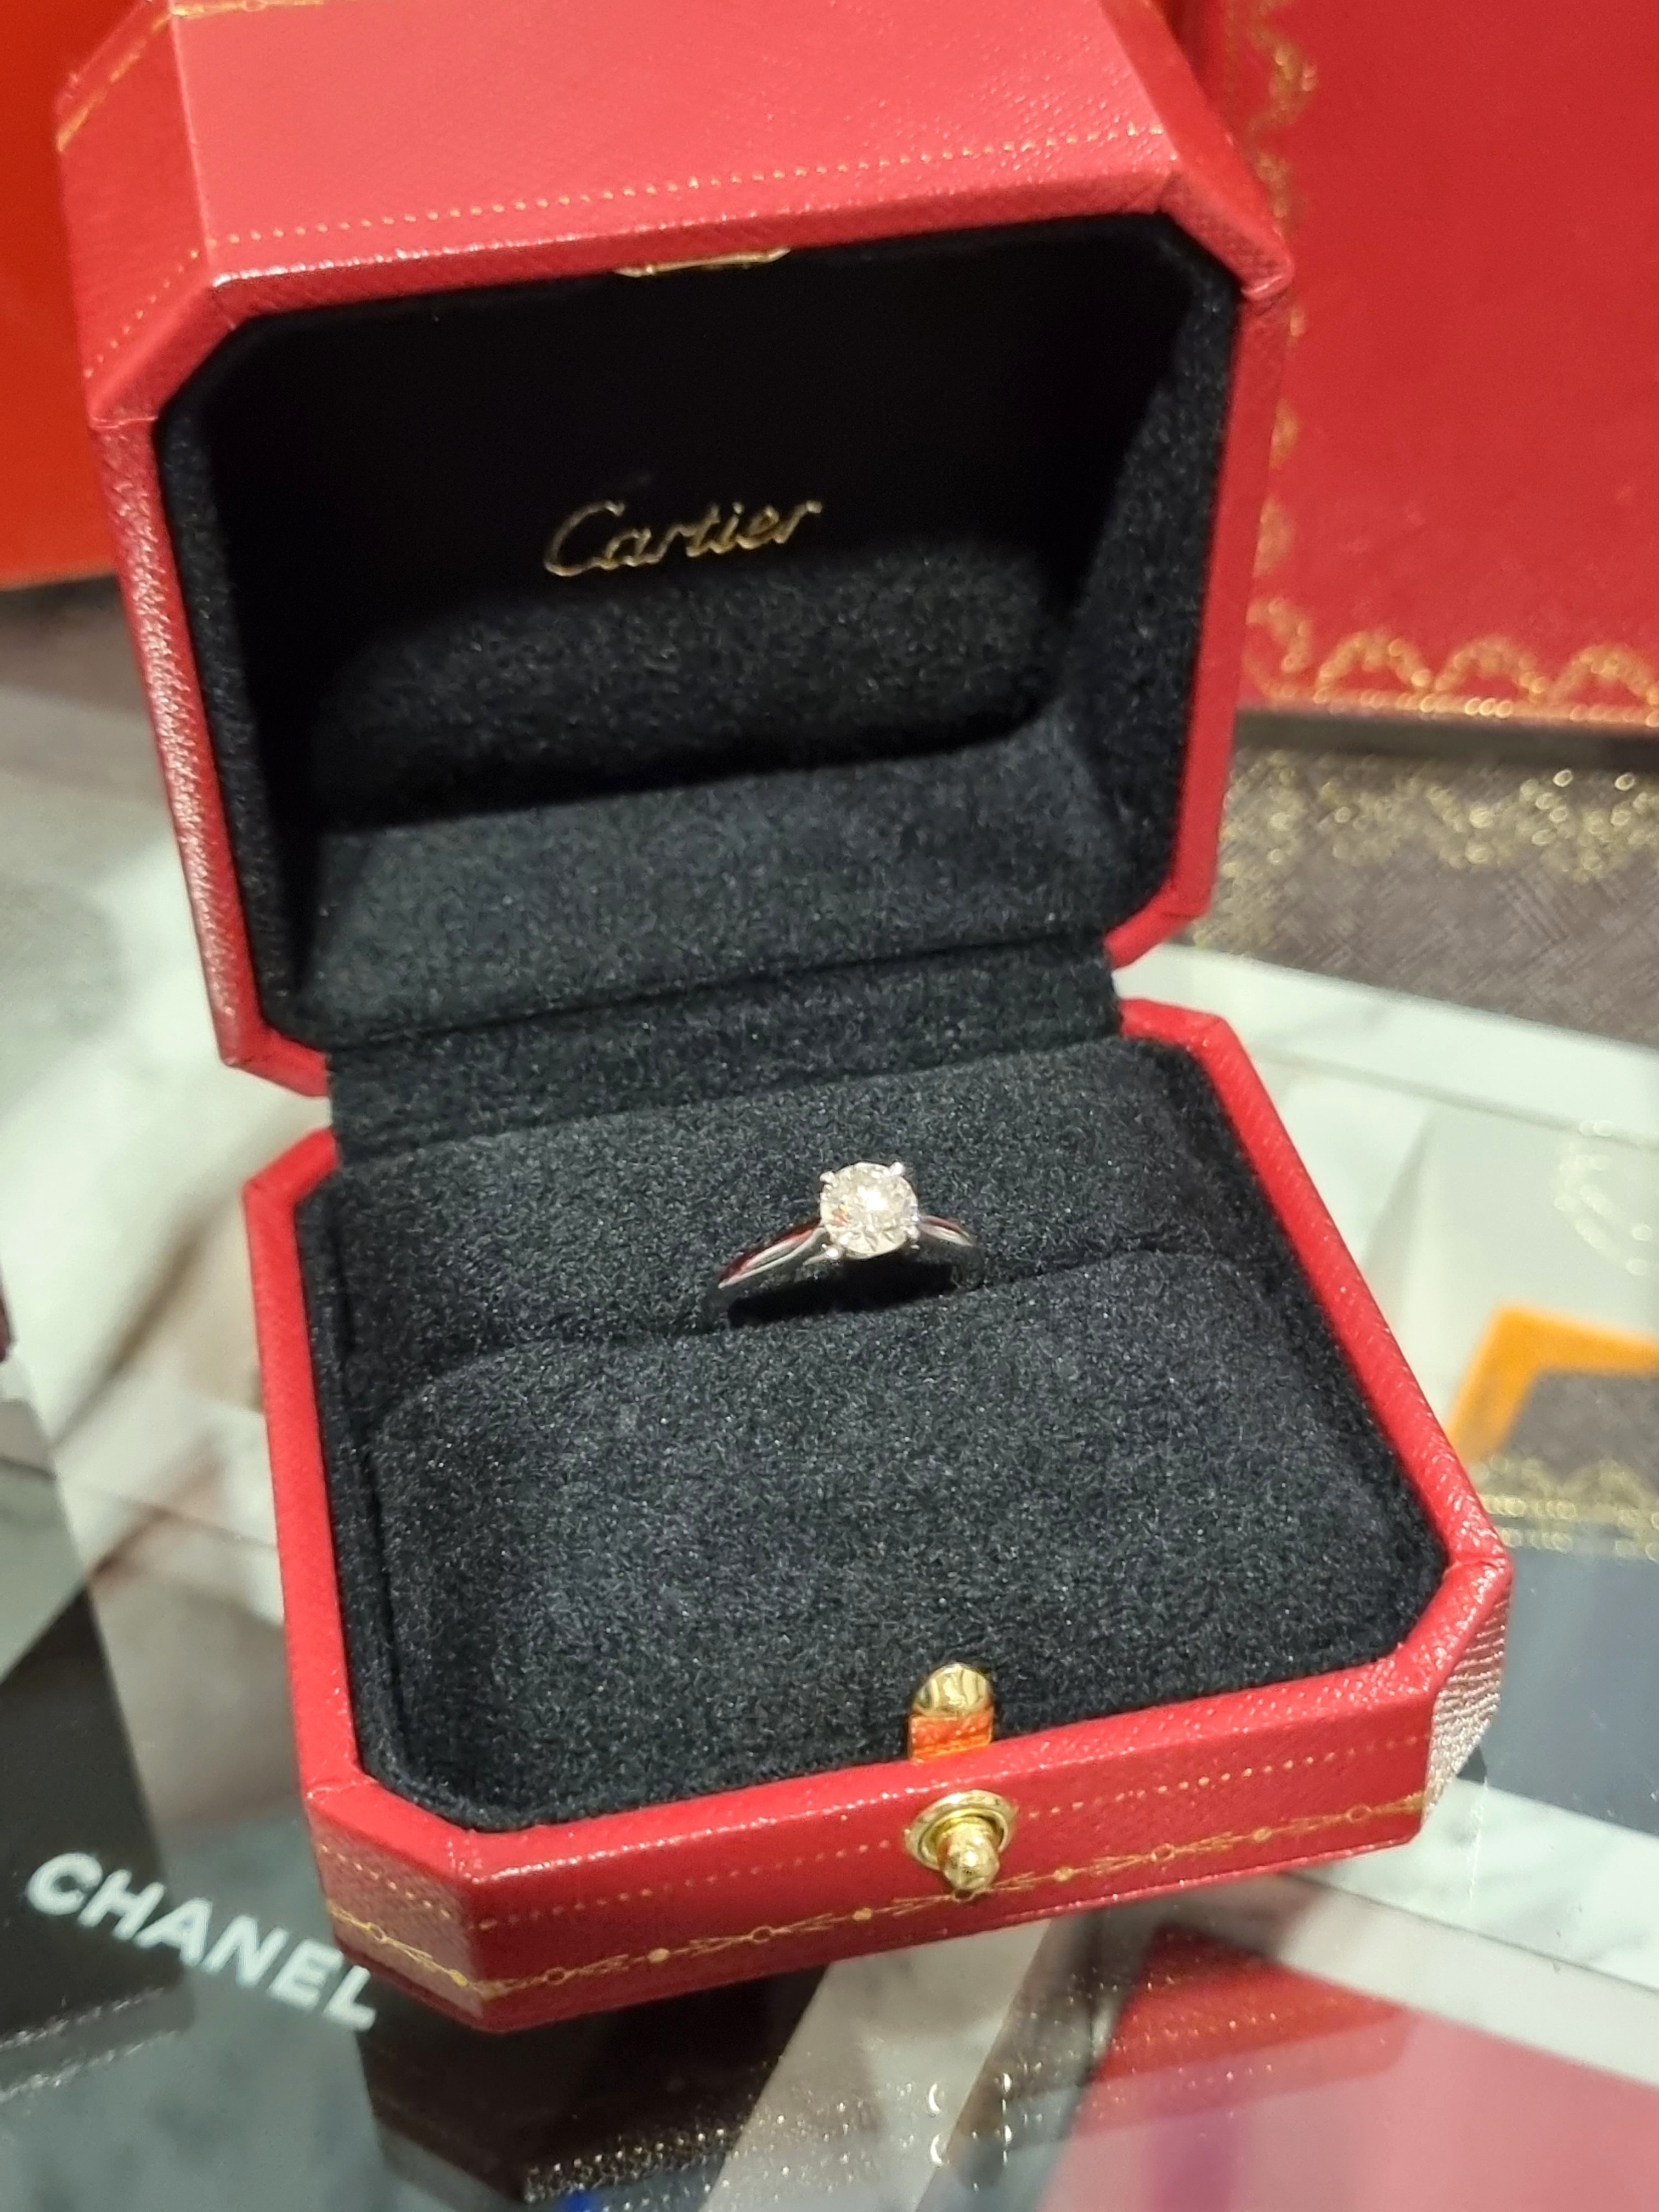 3 carat cartier ring price